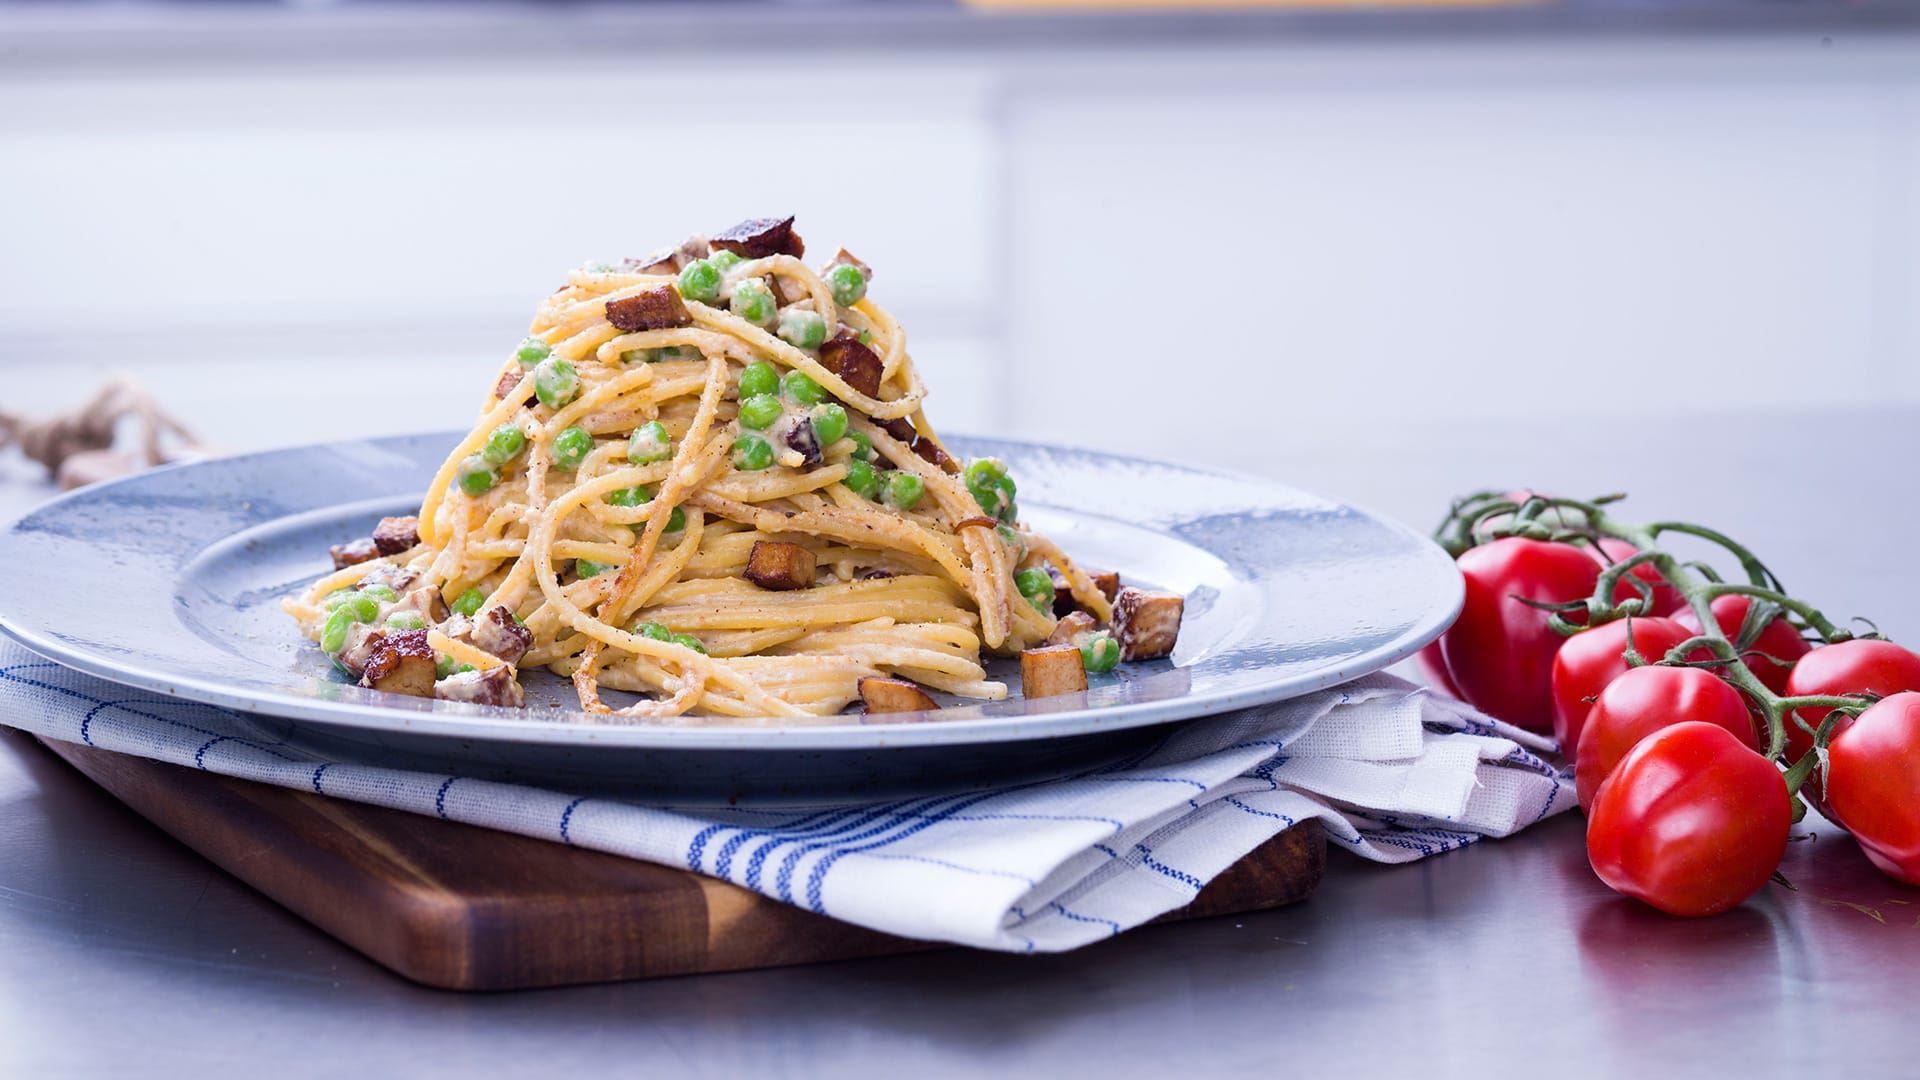 Tallrik med gluten- och laktosfri spaghetti Carbonara